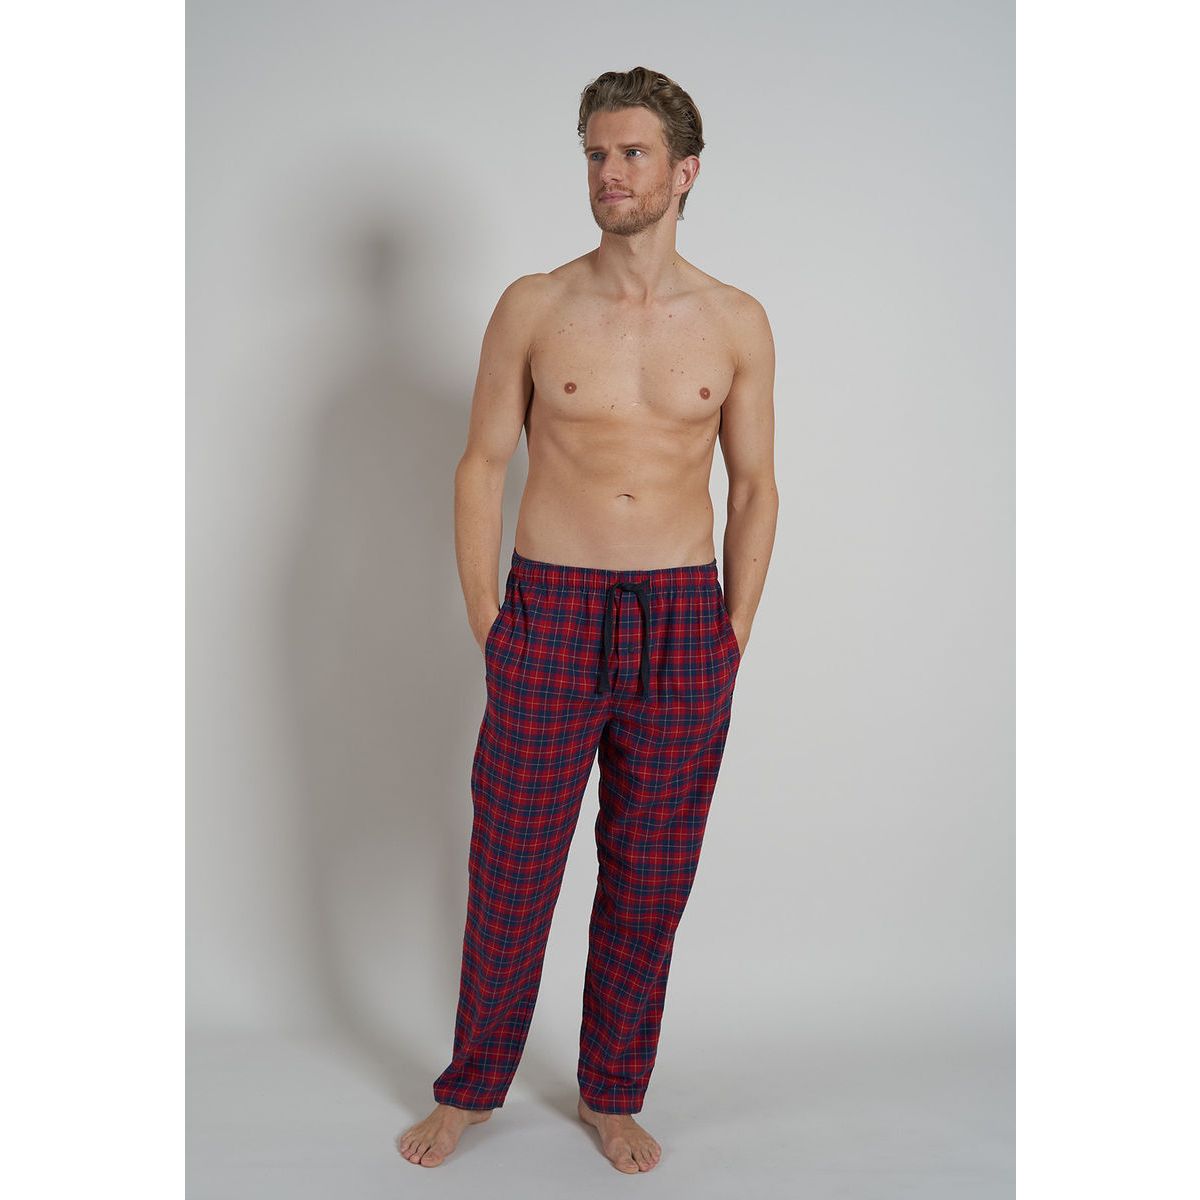 Kikker Koning Lear Meetbaar Tom Tailor flanellen heren pyjamabroek | Gratis verzending vanaf € 40,- |  Gratis retour | Snel in huis | Online de mooiste pyjama's, nachthemden,  ondermode en meer